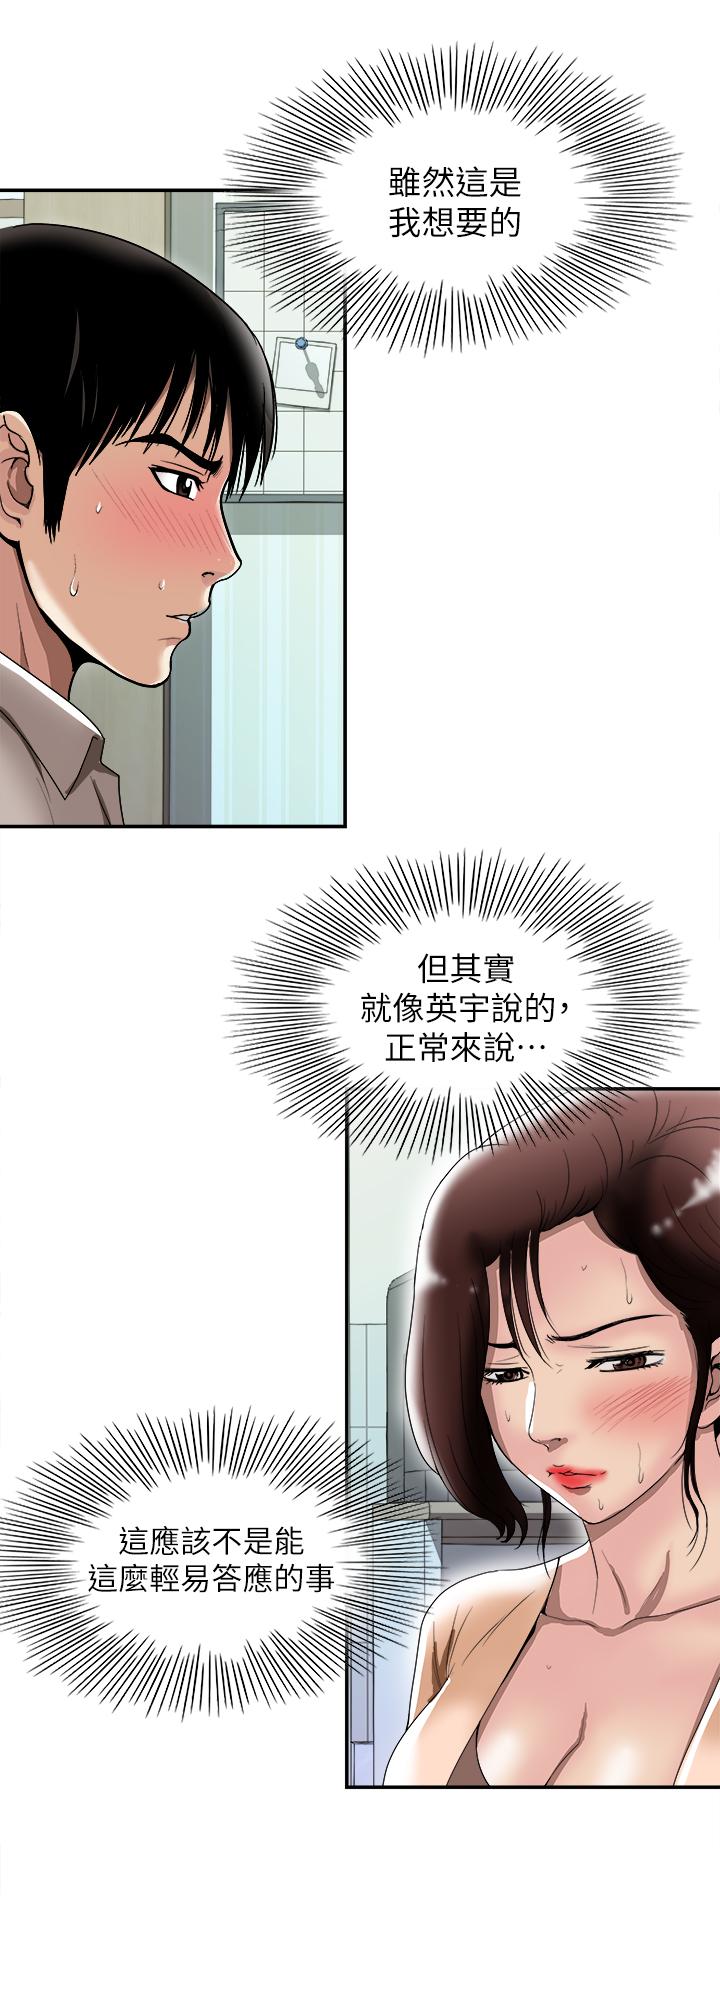 韩国污漫画 別人的老婆 第91话(第2季)-彩莲倾吐而出的心里话 2